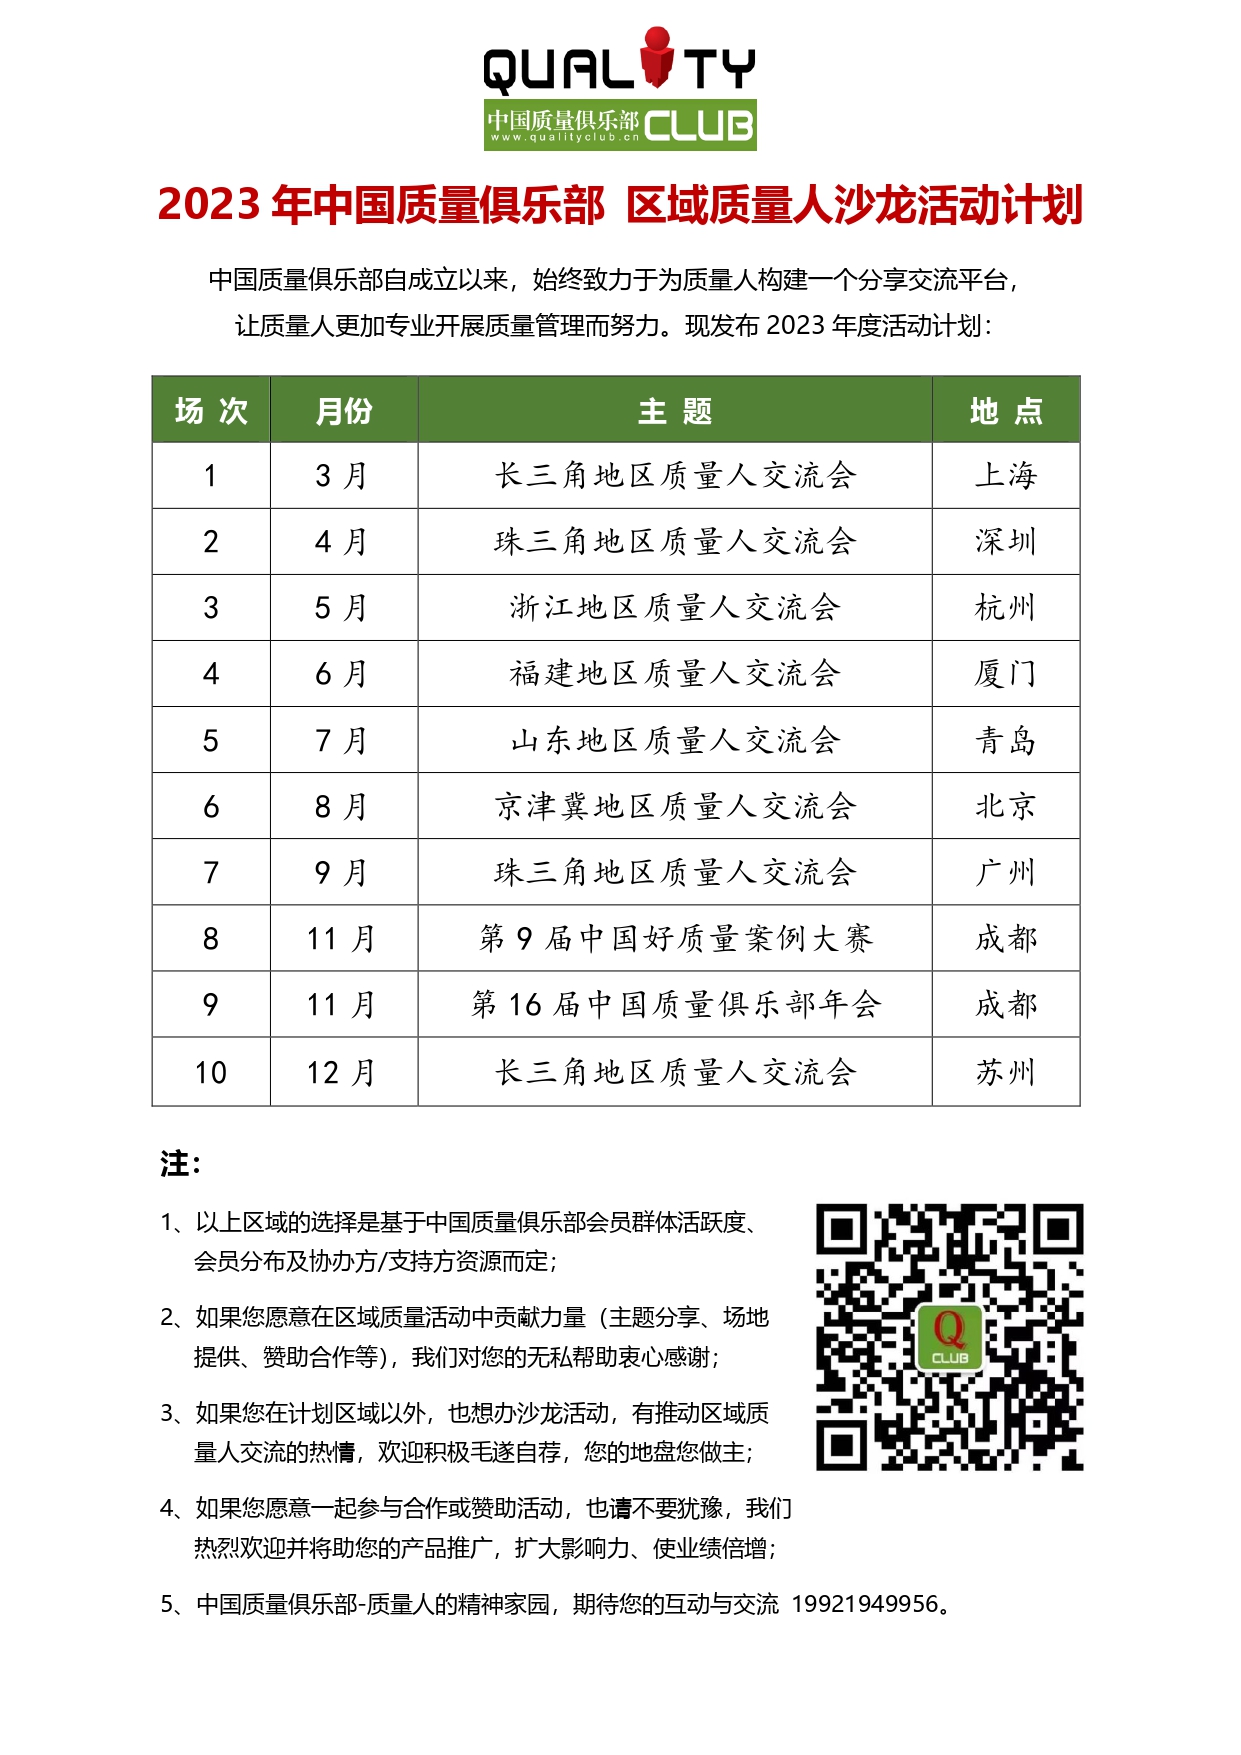 2023年度中国质量俱乐部质量人沙龙活动计划.jpg